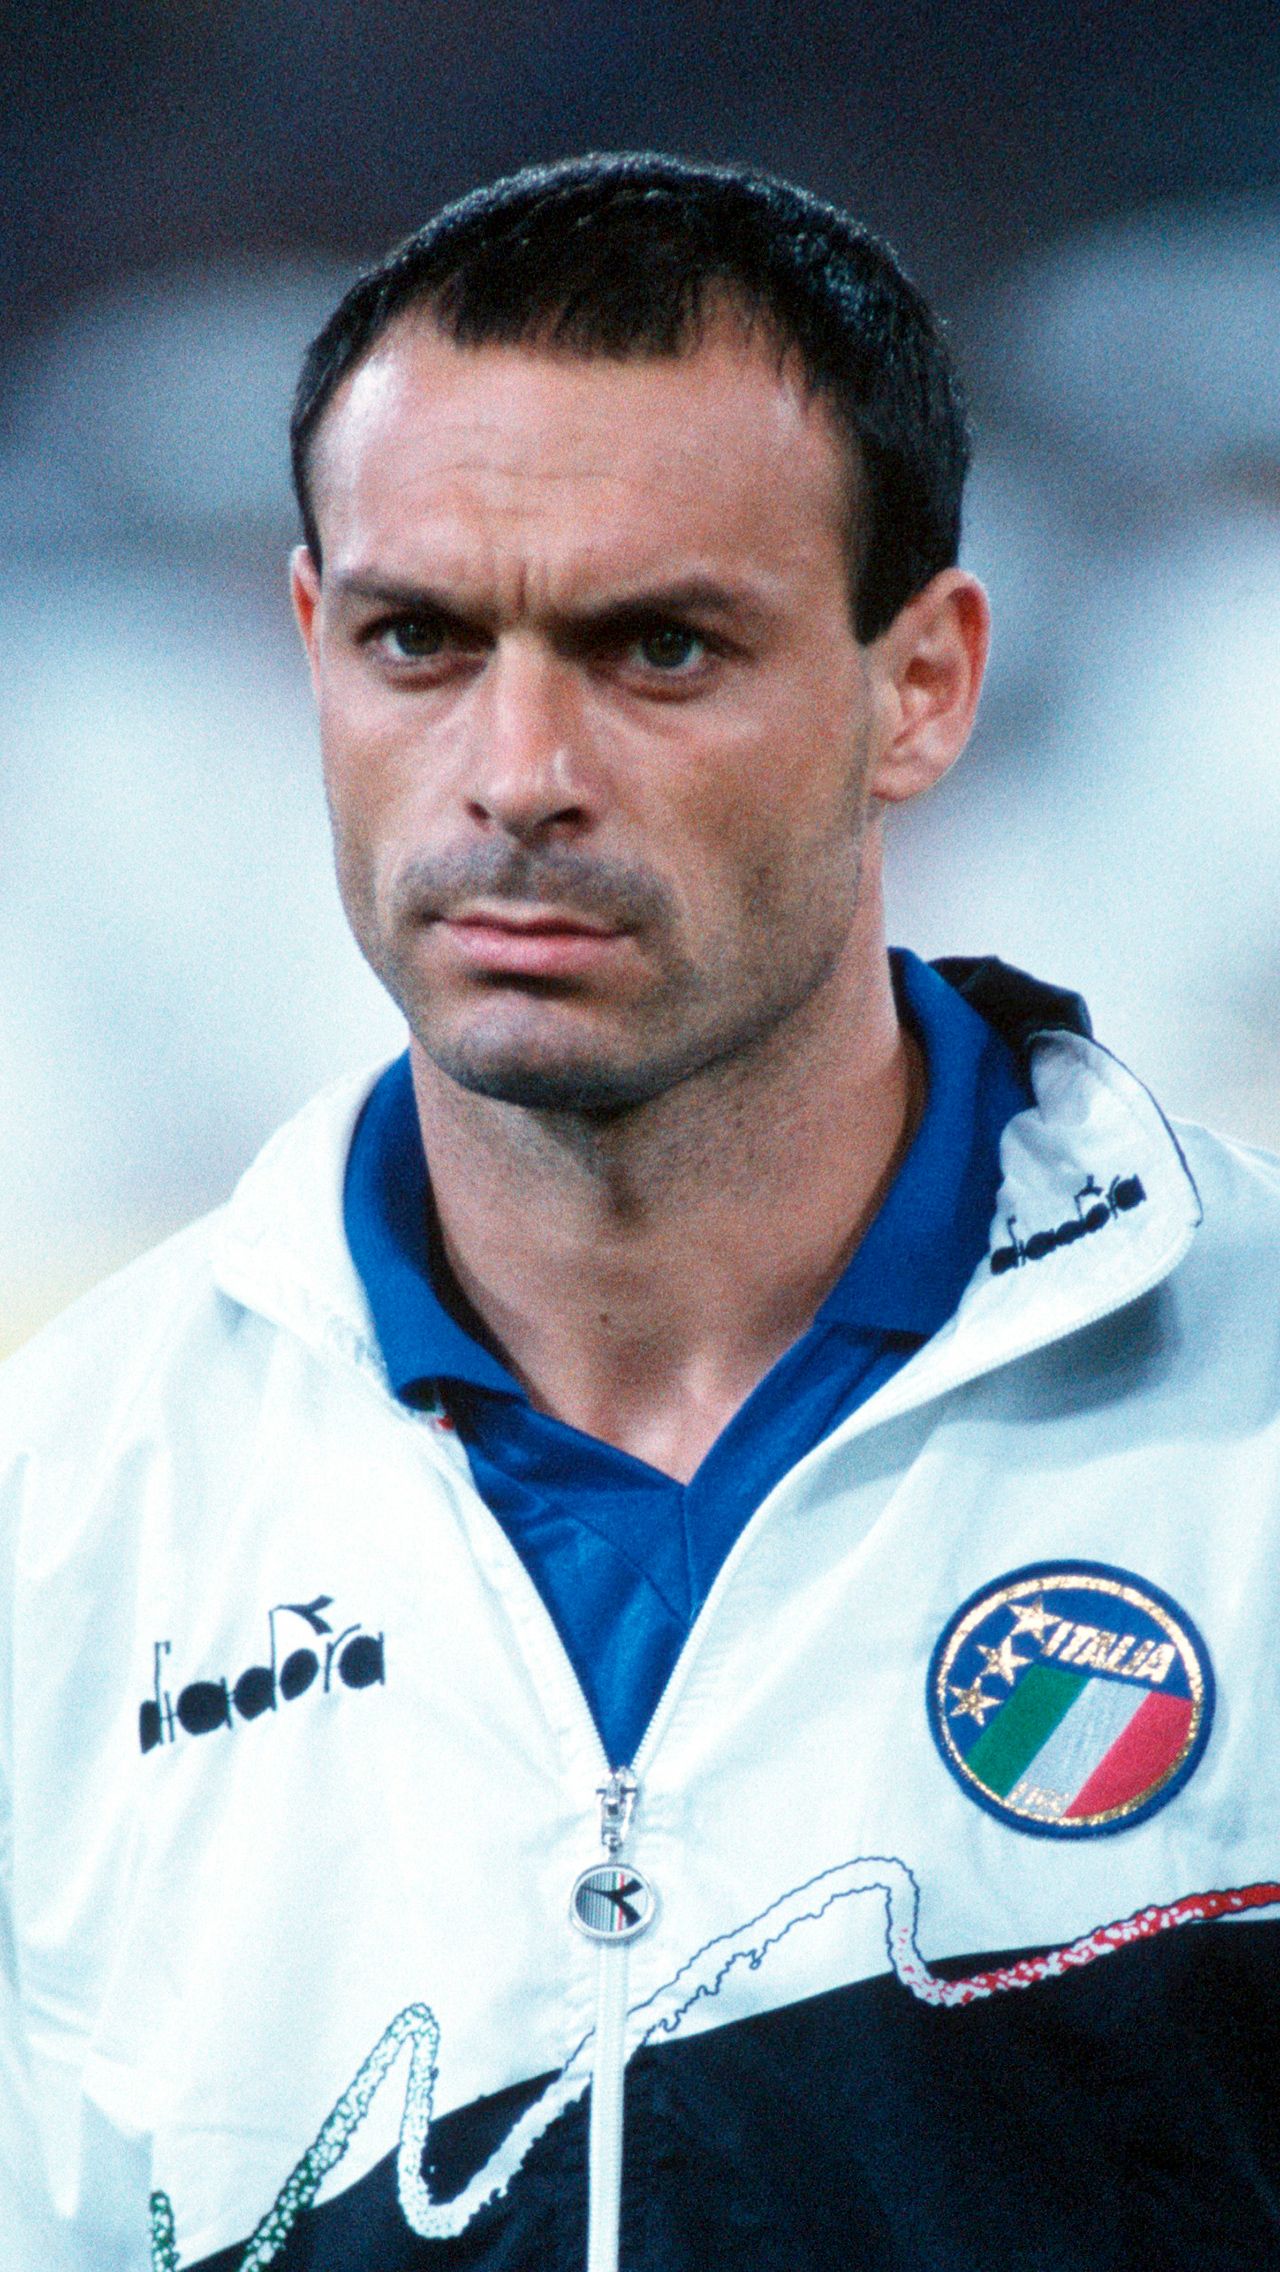 Сальваторе Скиллачи (1990), сборная Италии — 6 голов